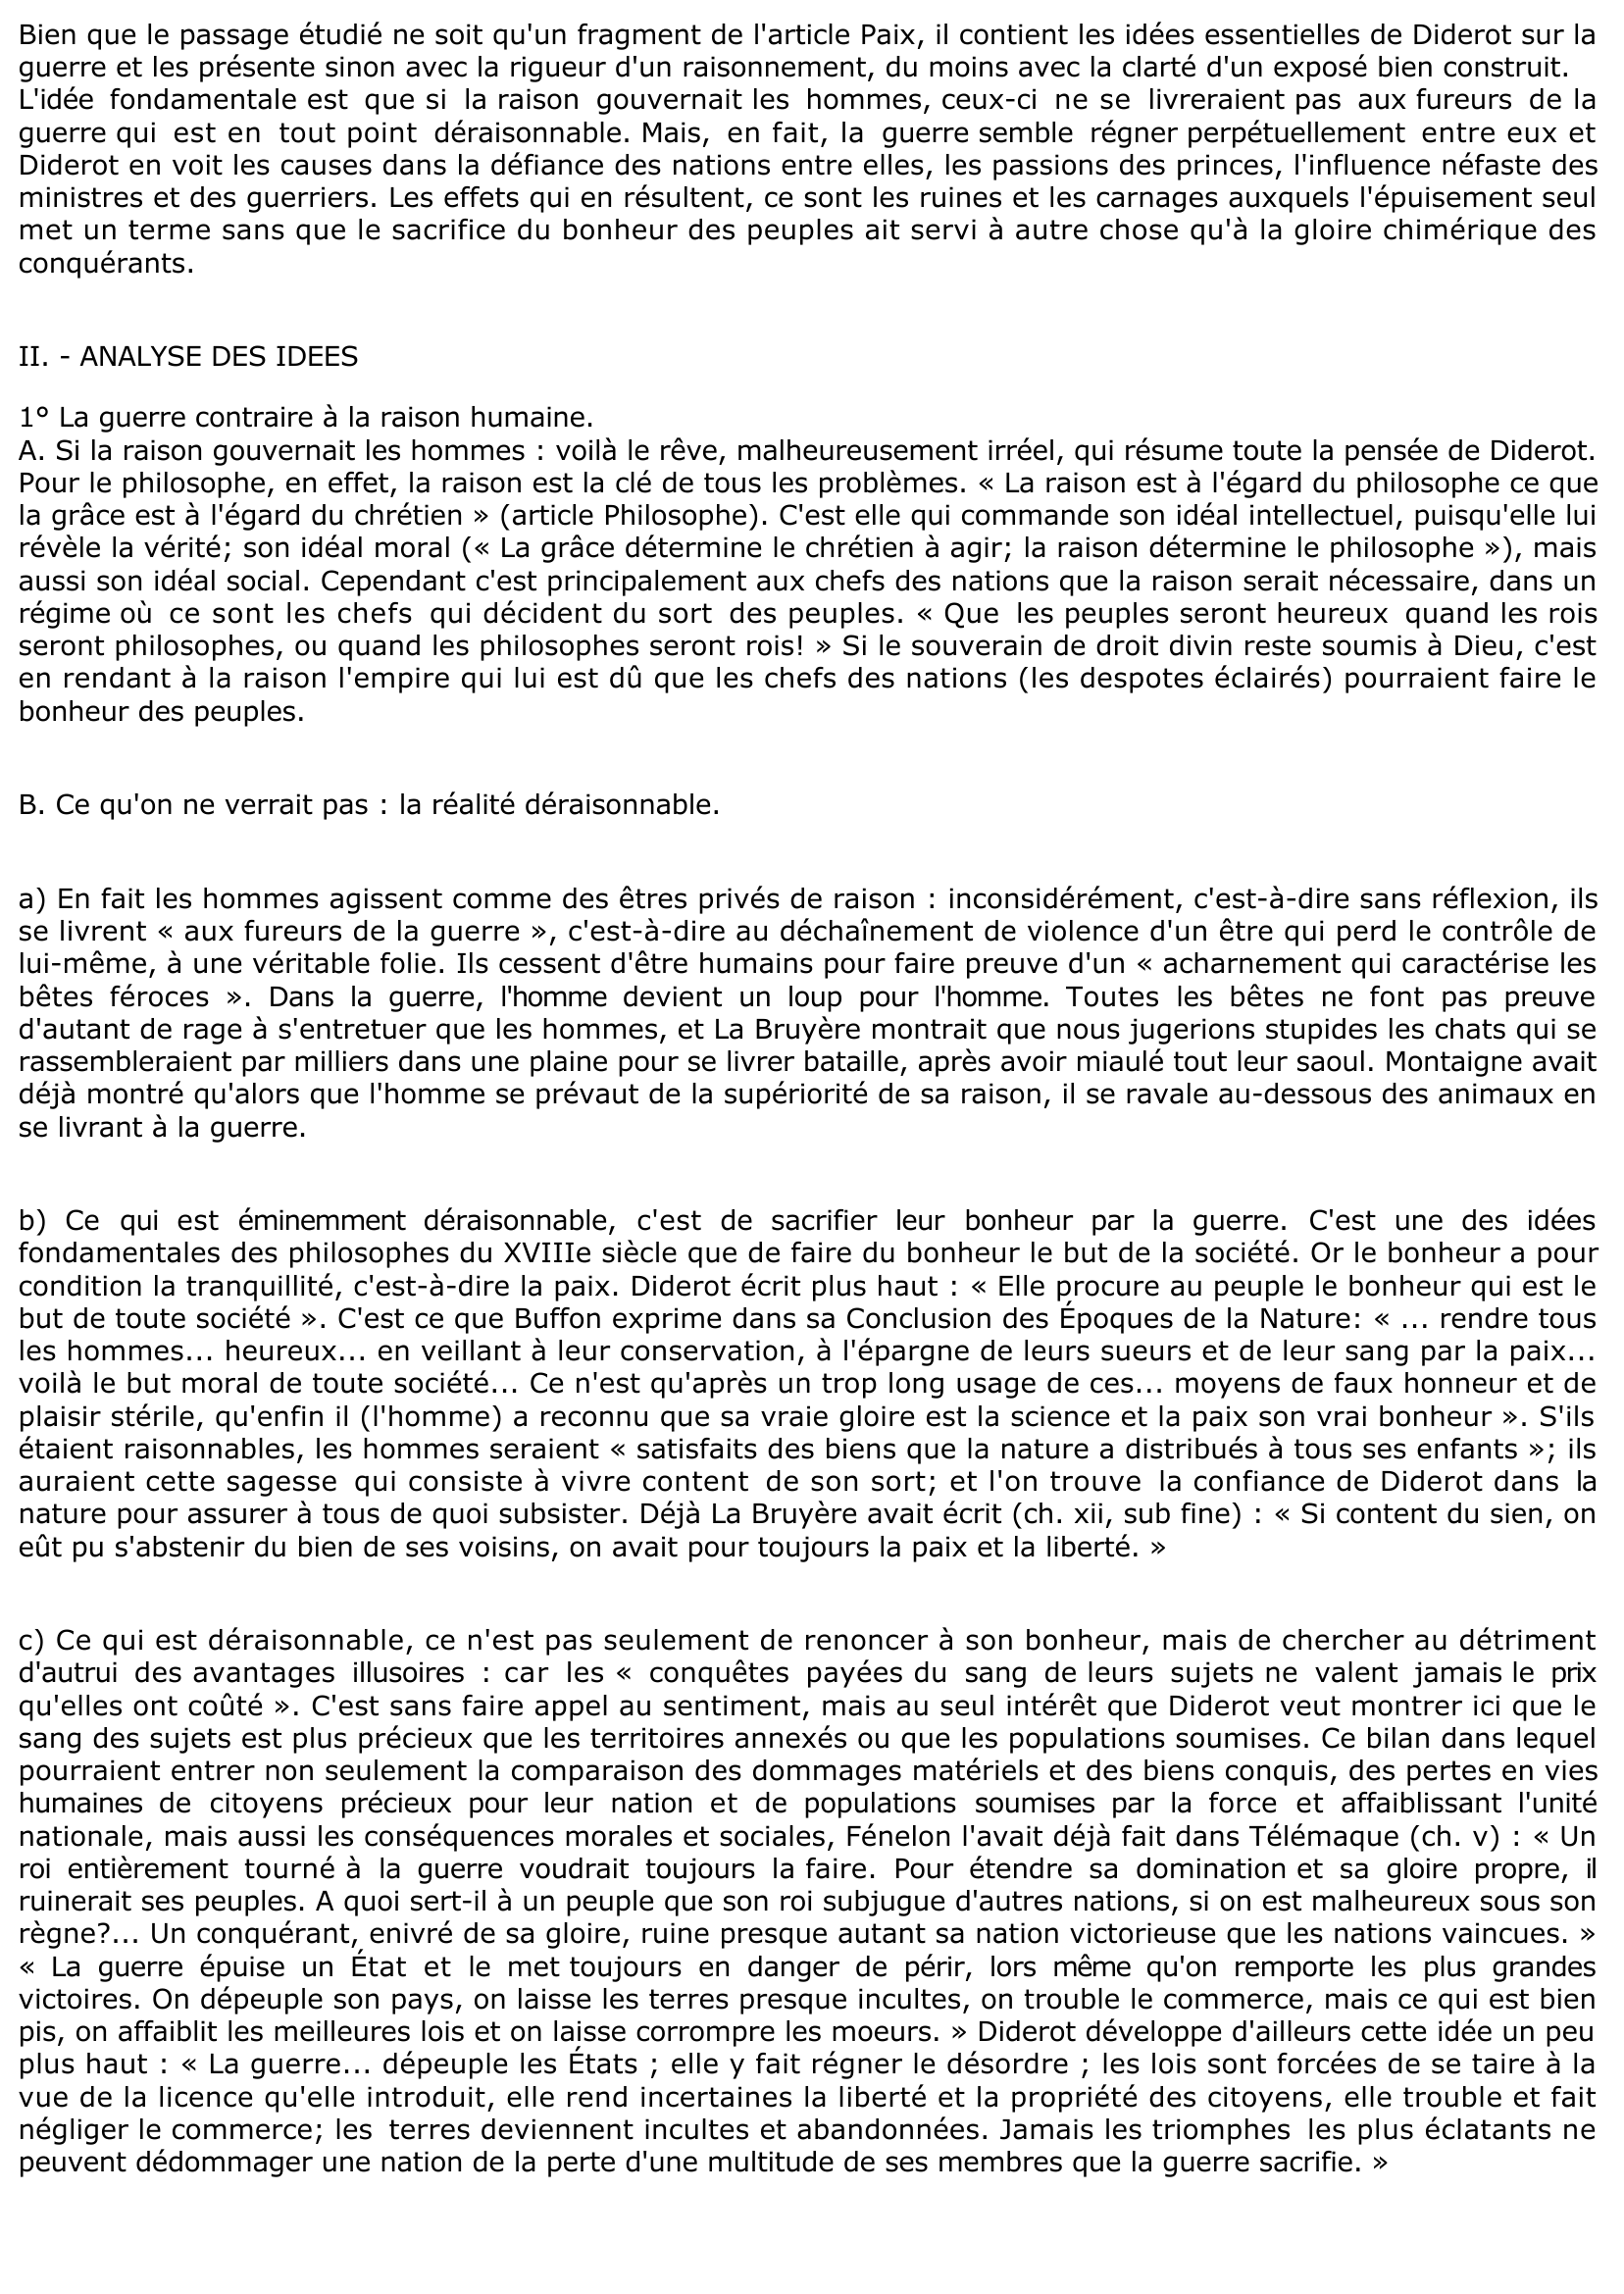 Prévisualisation du document Diderot, l'Encyclopédie, Article Paix  (TEXTE COMMENTÉ)